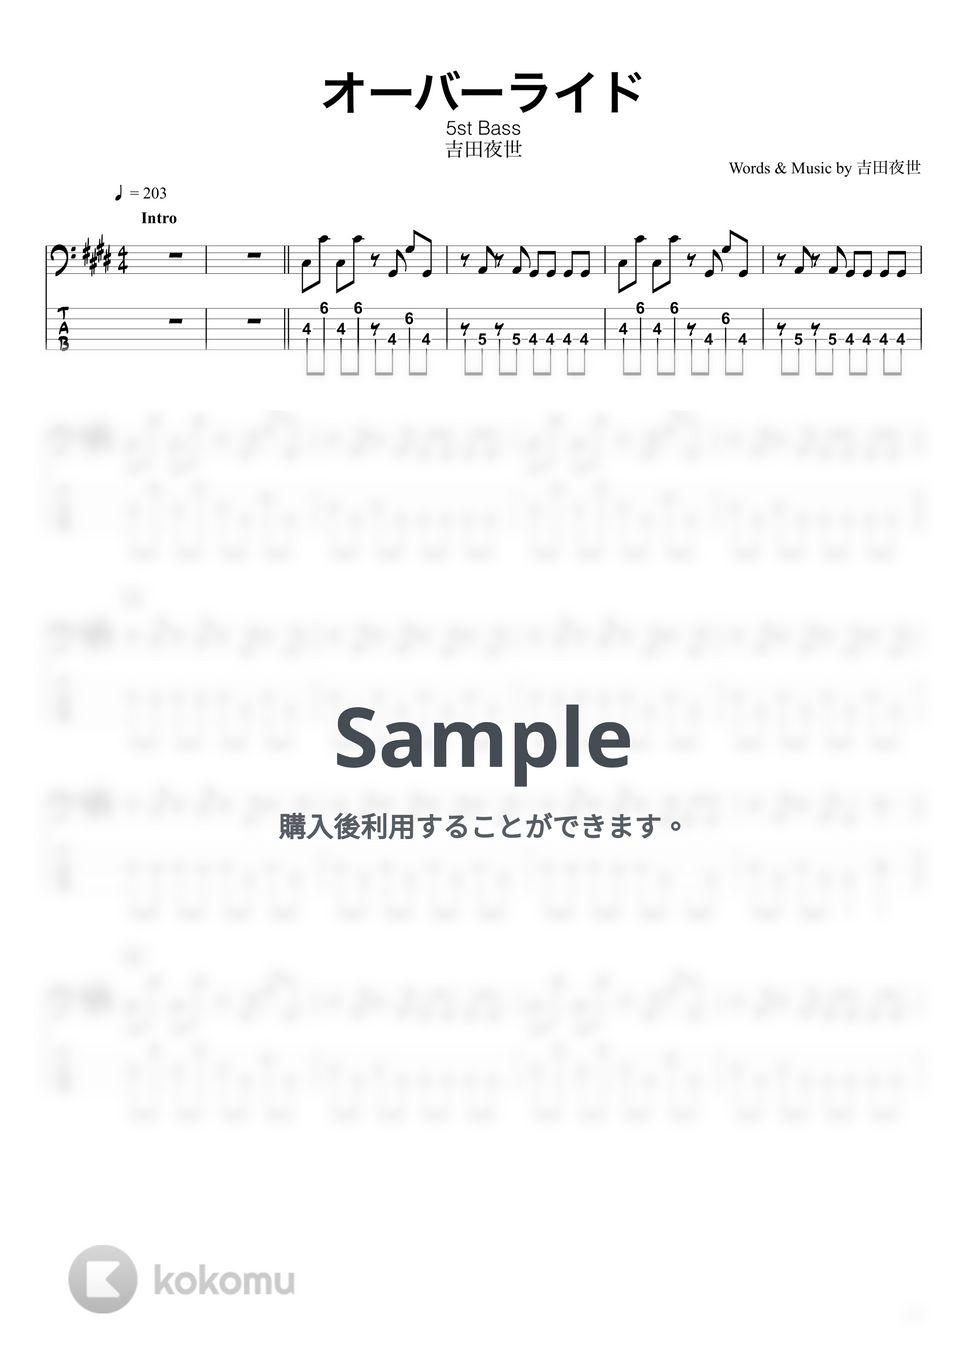 吉田夜世 - オーバーライド (ベースTAB譜☆5弦ベース対応) by swbass